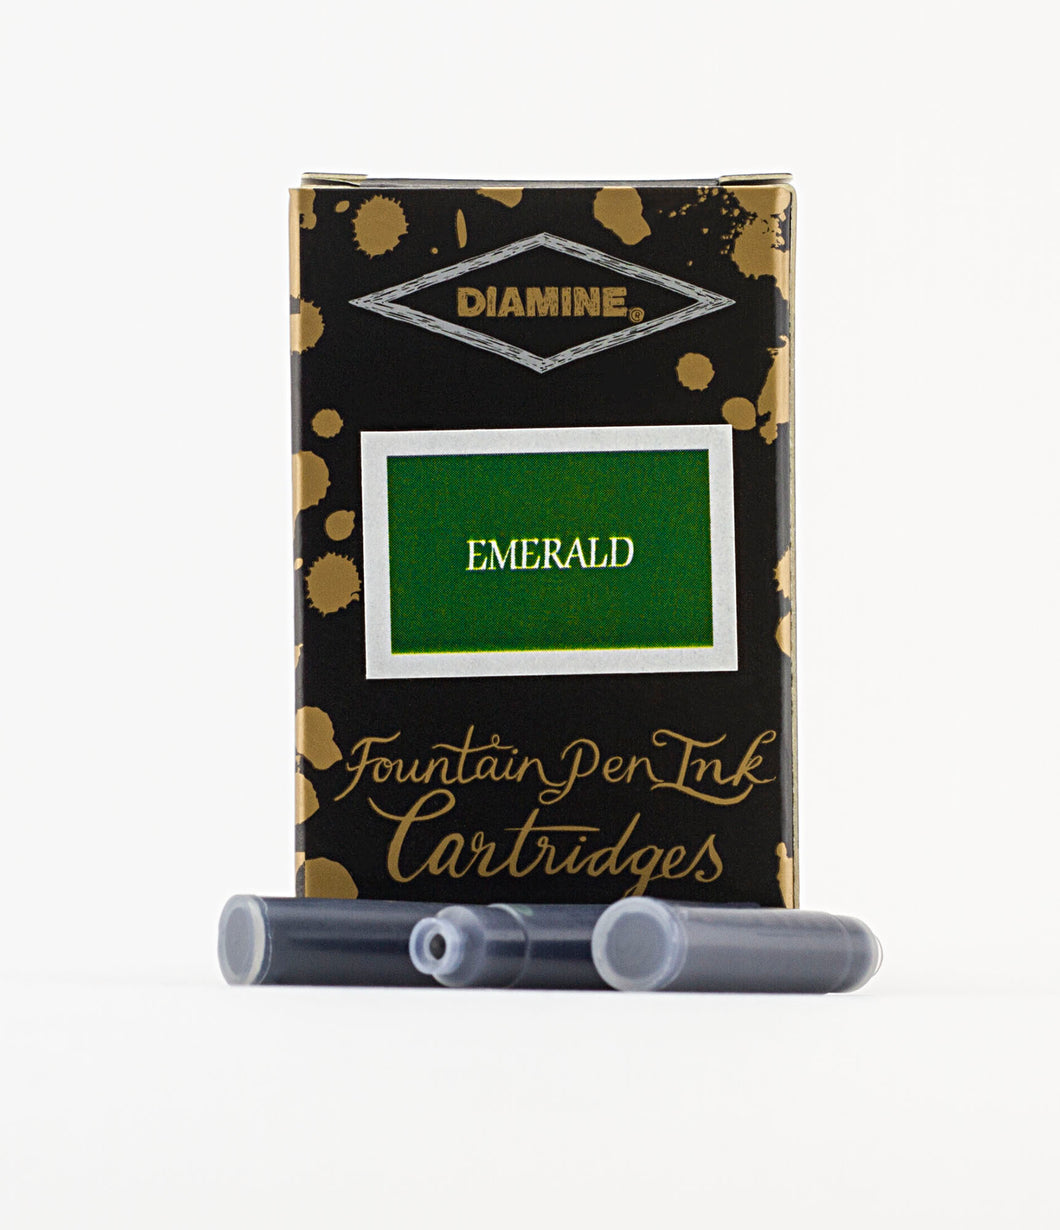 Diamine Fountain Pen Ink Cartridges - Emerald